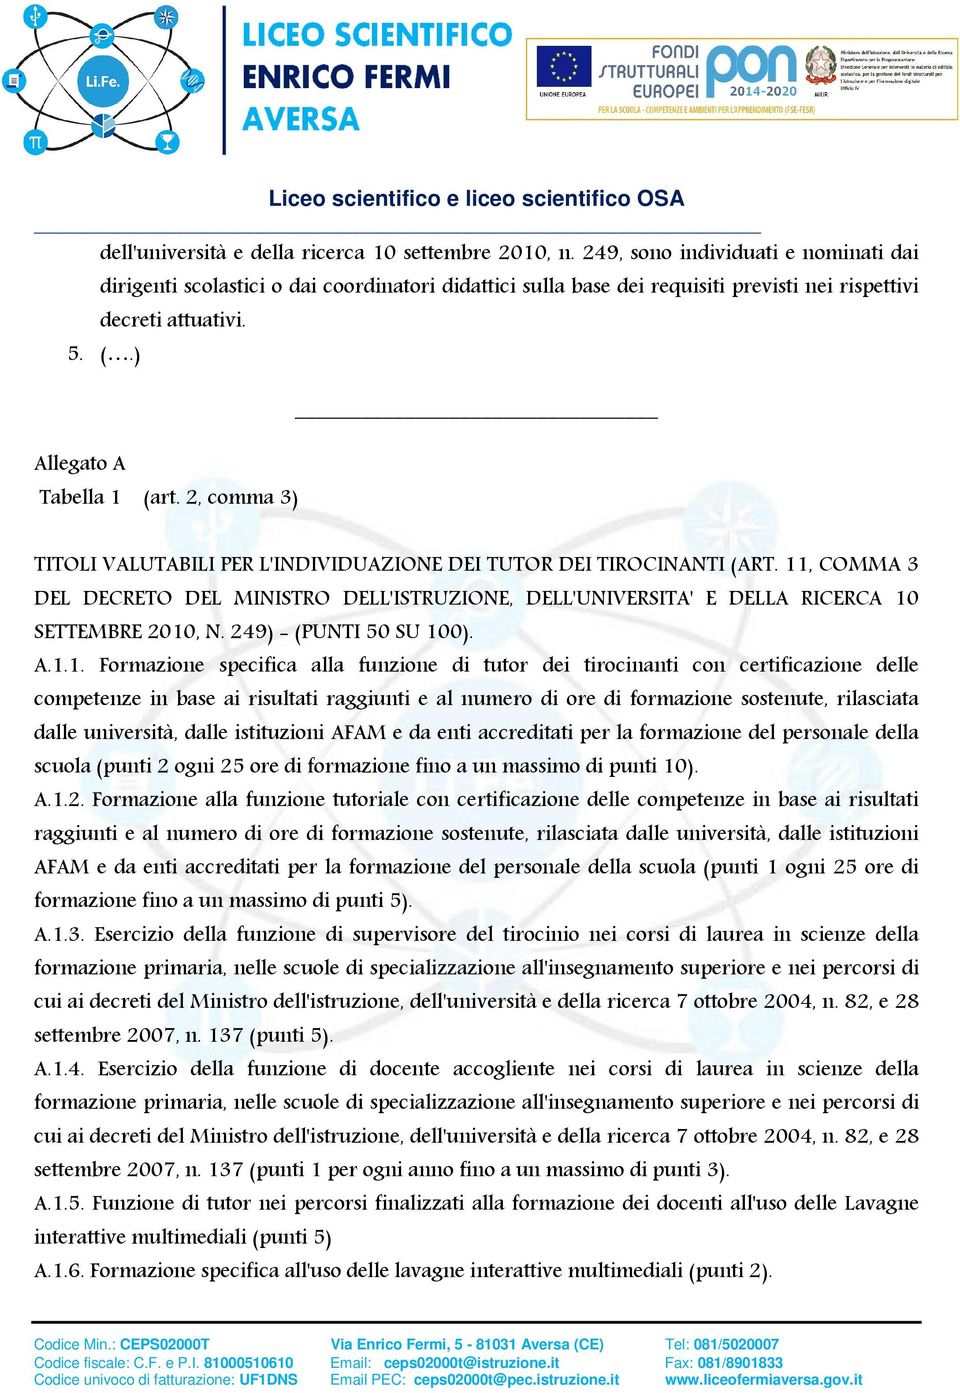 2, comma 3) TITOLI VALUTABILI PER L'INDIVIDUAZIONE DEI TUTOR DEI TIROCINANTI (ART. 11, COMMA 3 DEL DECRETO DEL MINISTRO DELL'ISTRUZIONE, DELL'UNIVERSITA' E DELLA RICERCA 10 SETTEMBRE 2010, N.